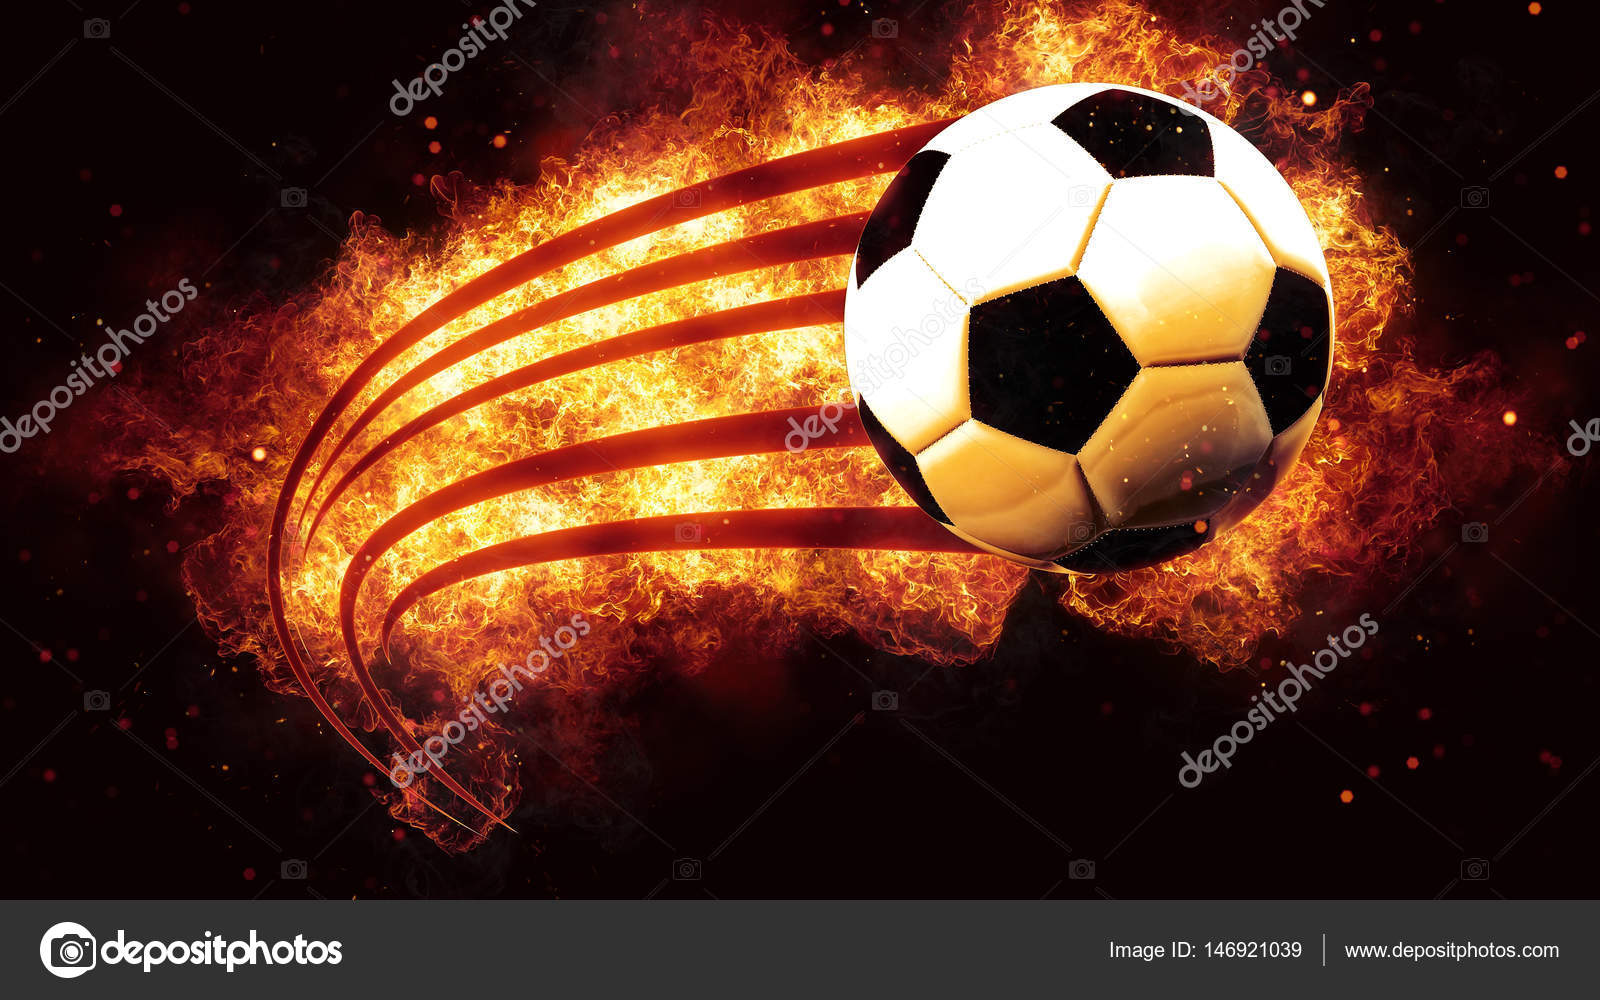 Um jogador de futebol com uma bola de fogo ao fundo